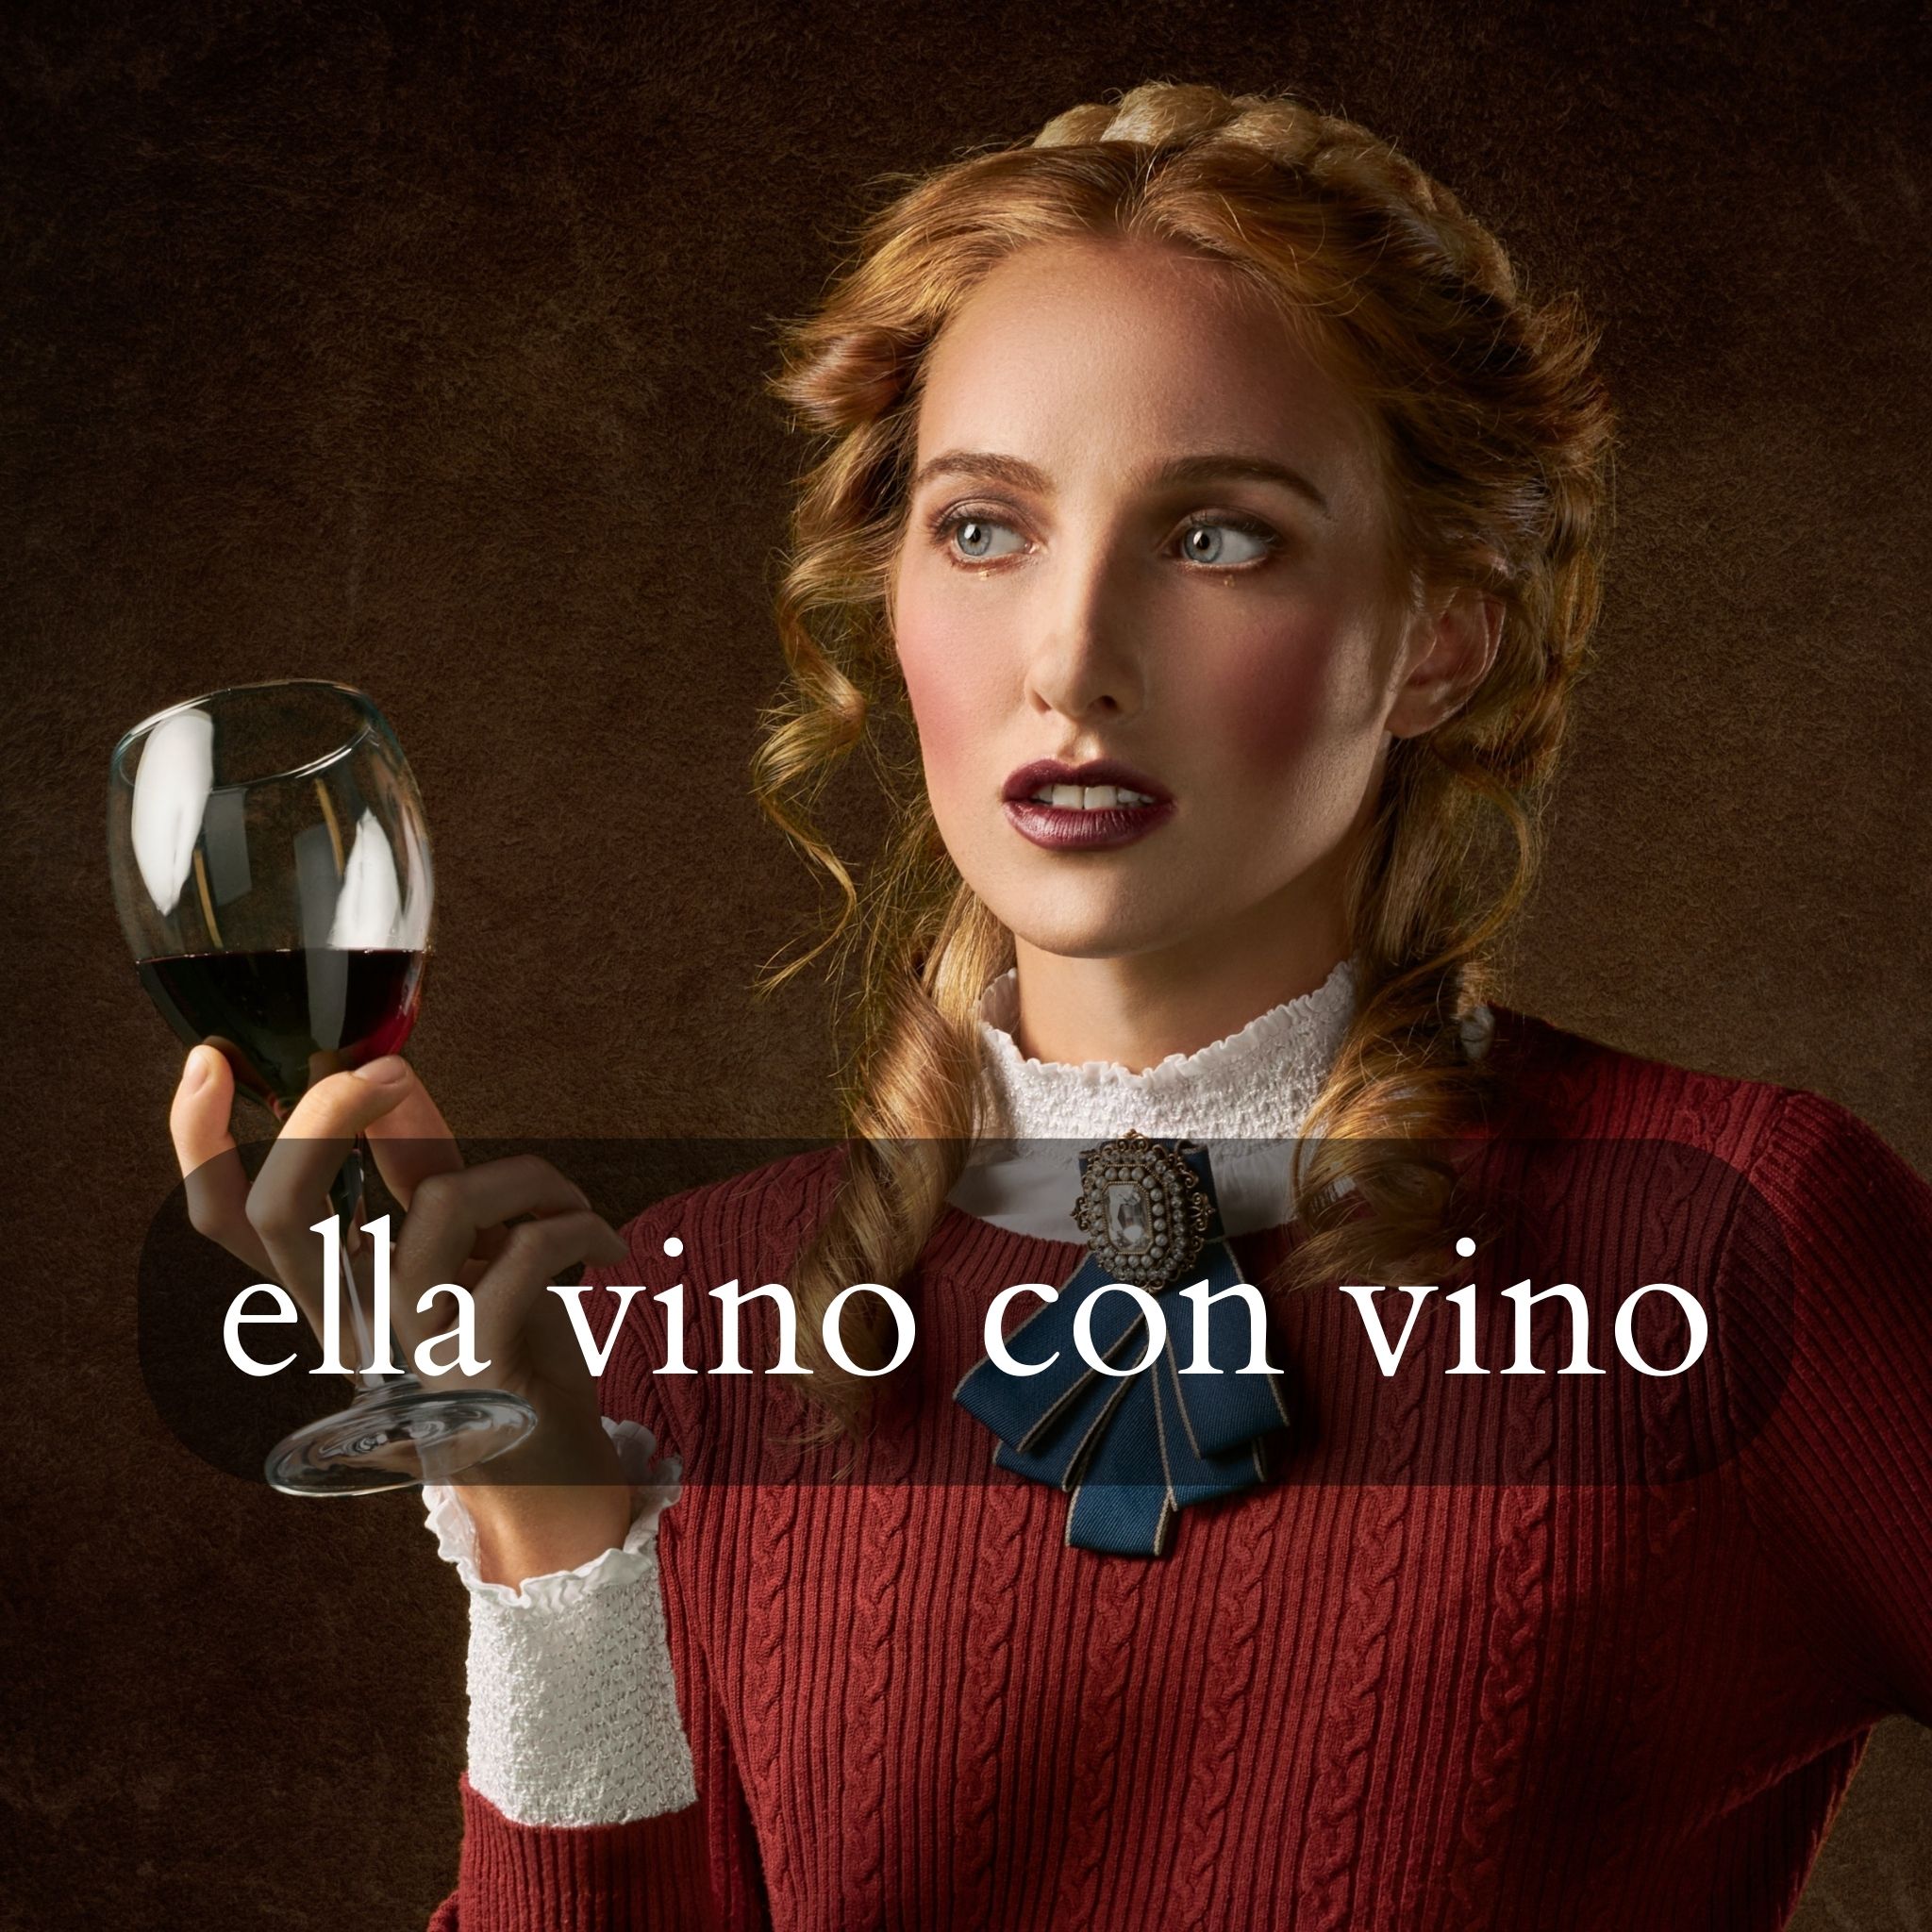 "Ella vino con vino" means "She comes with wine." Vino is a Spanish homograph.